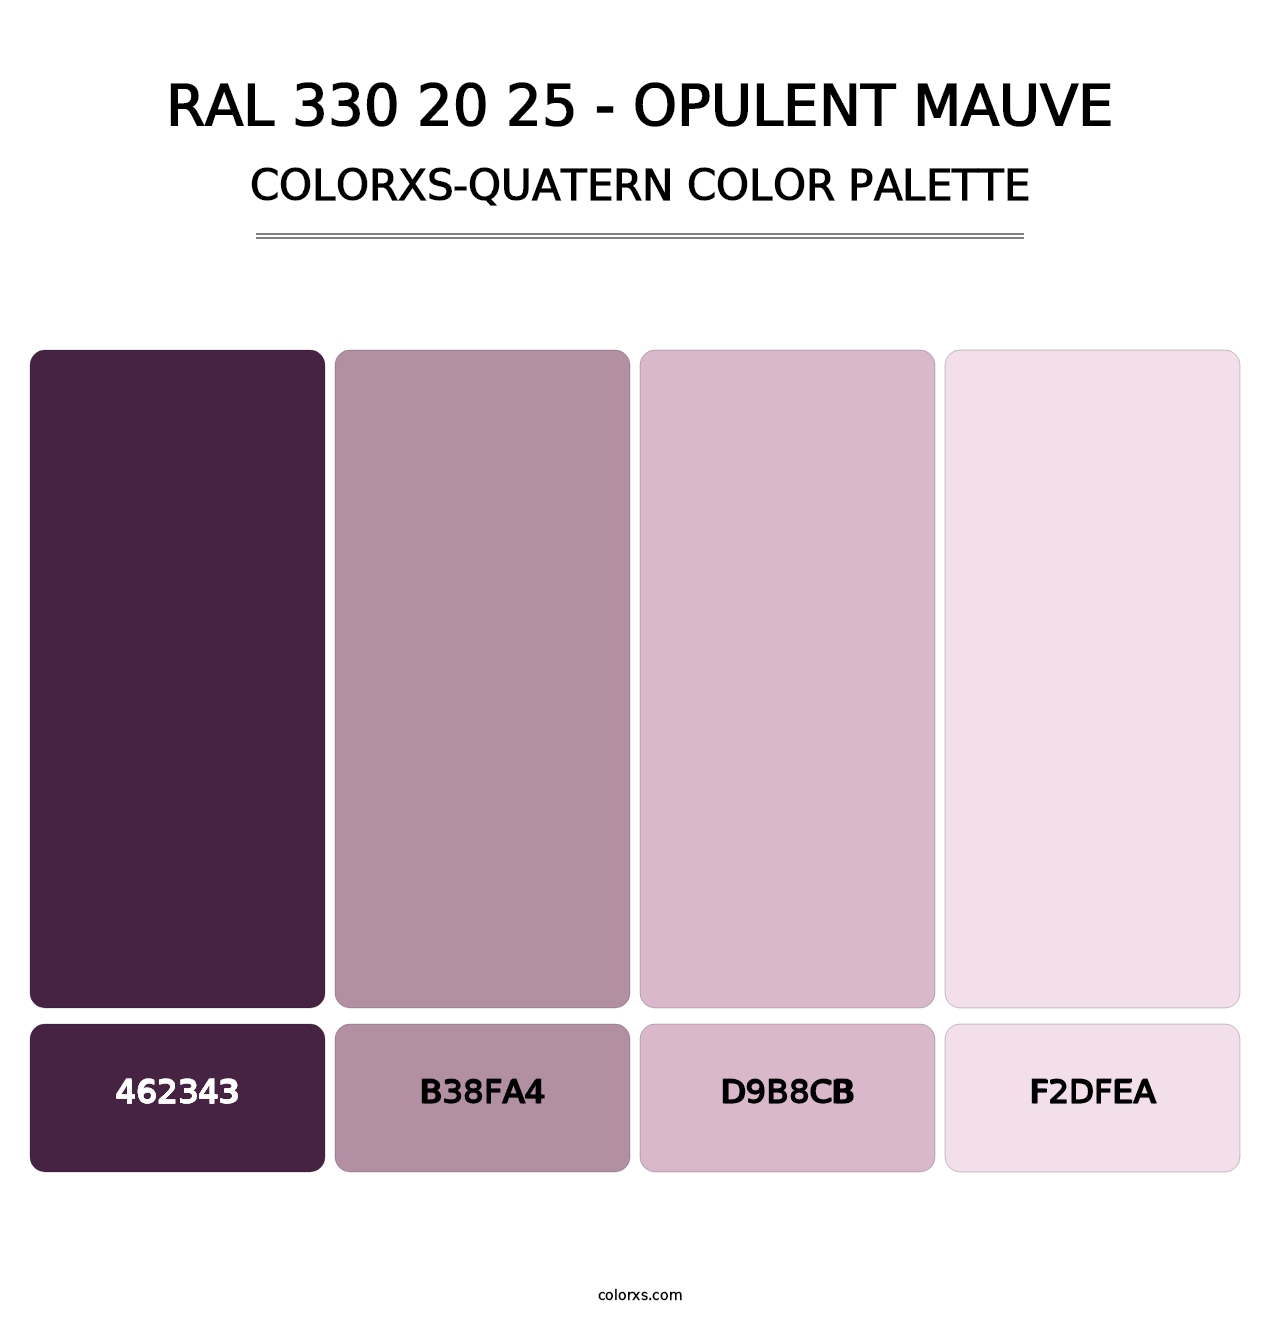 RAL 330 20 25 - Opulent Mauve - Colorxs Quatern Palette